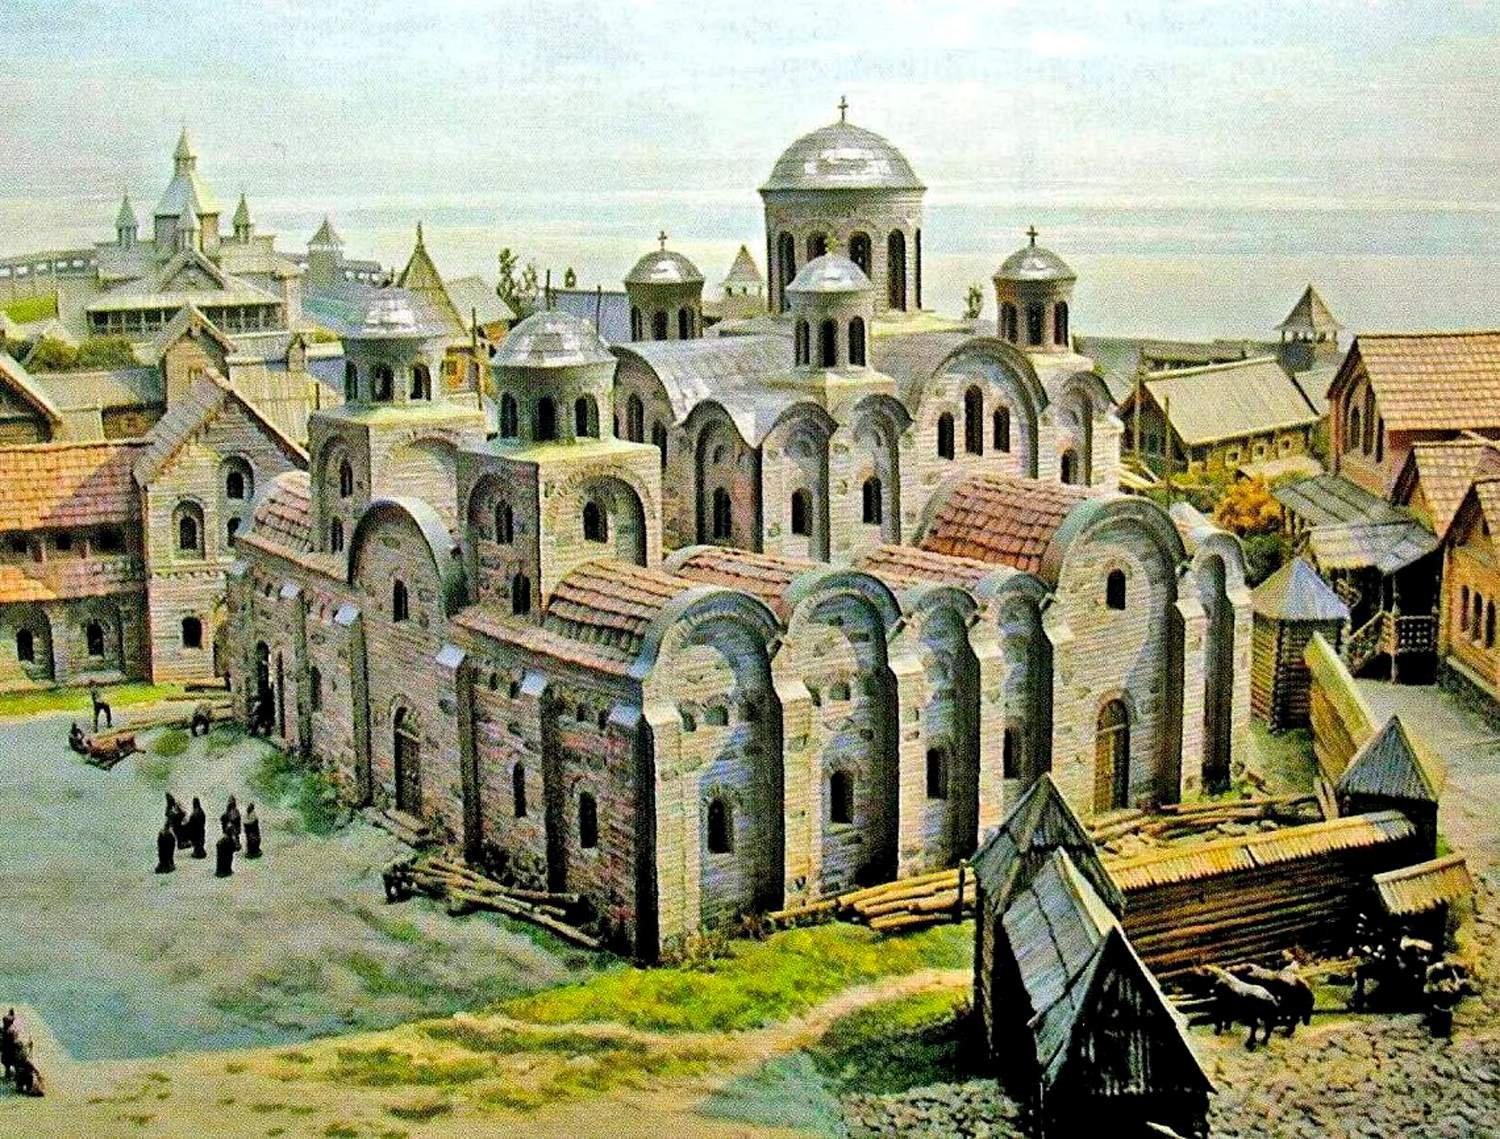 Десятинная Церковь в Киеве 10 век